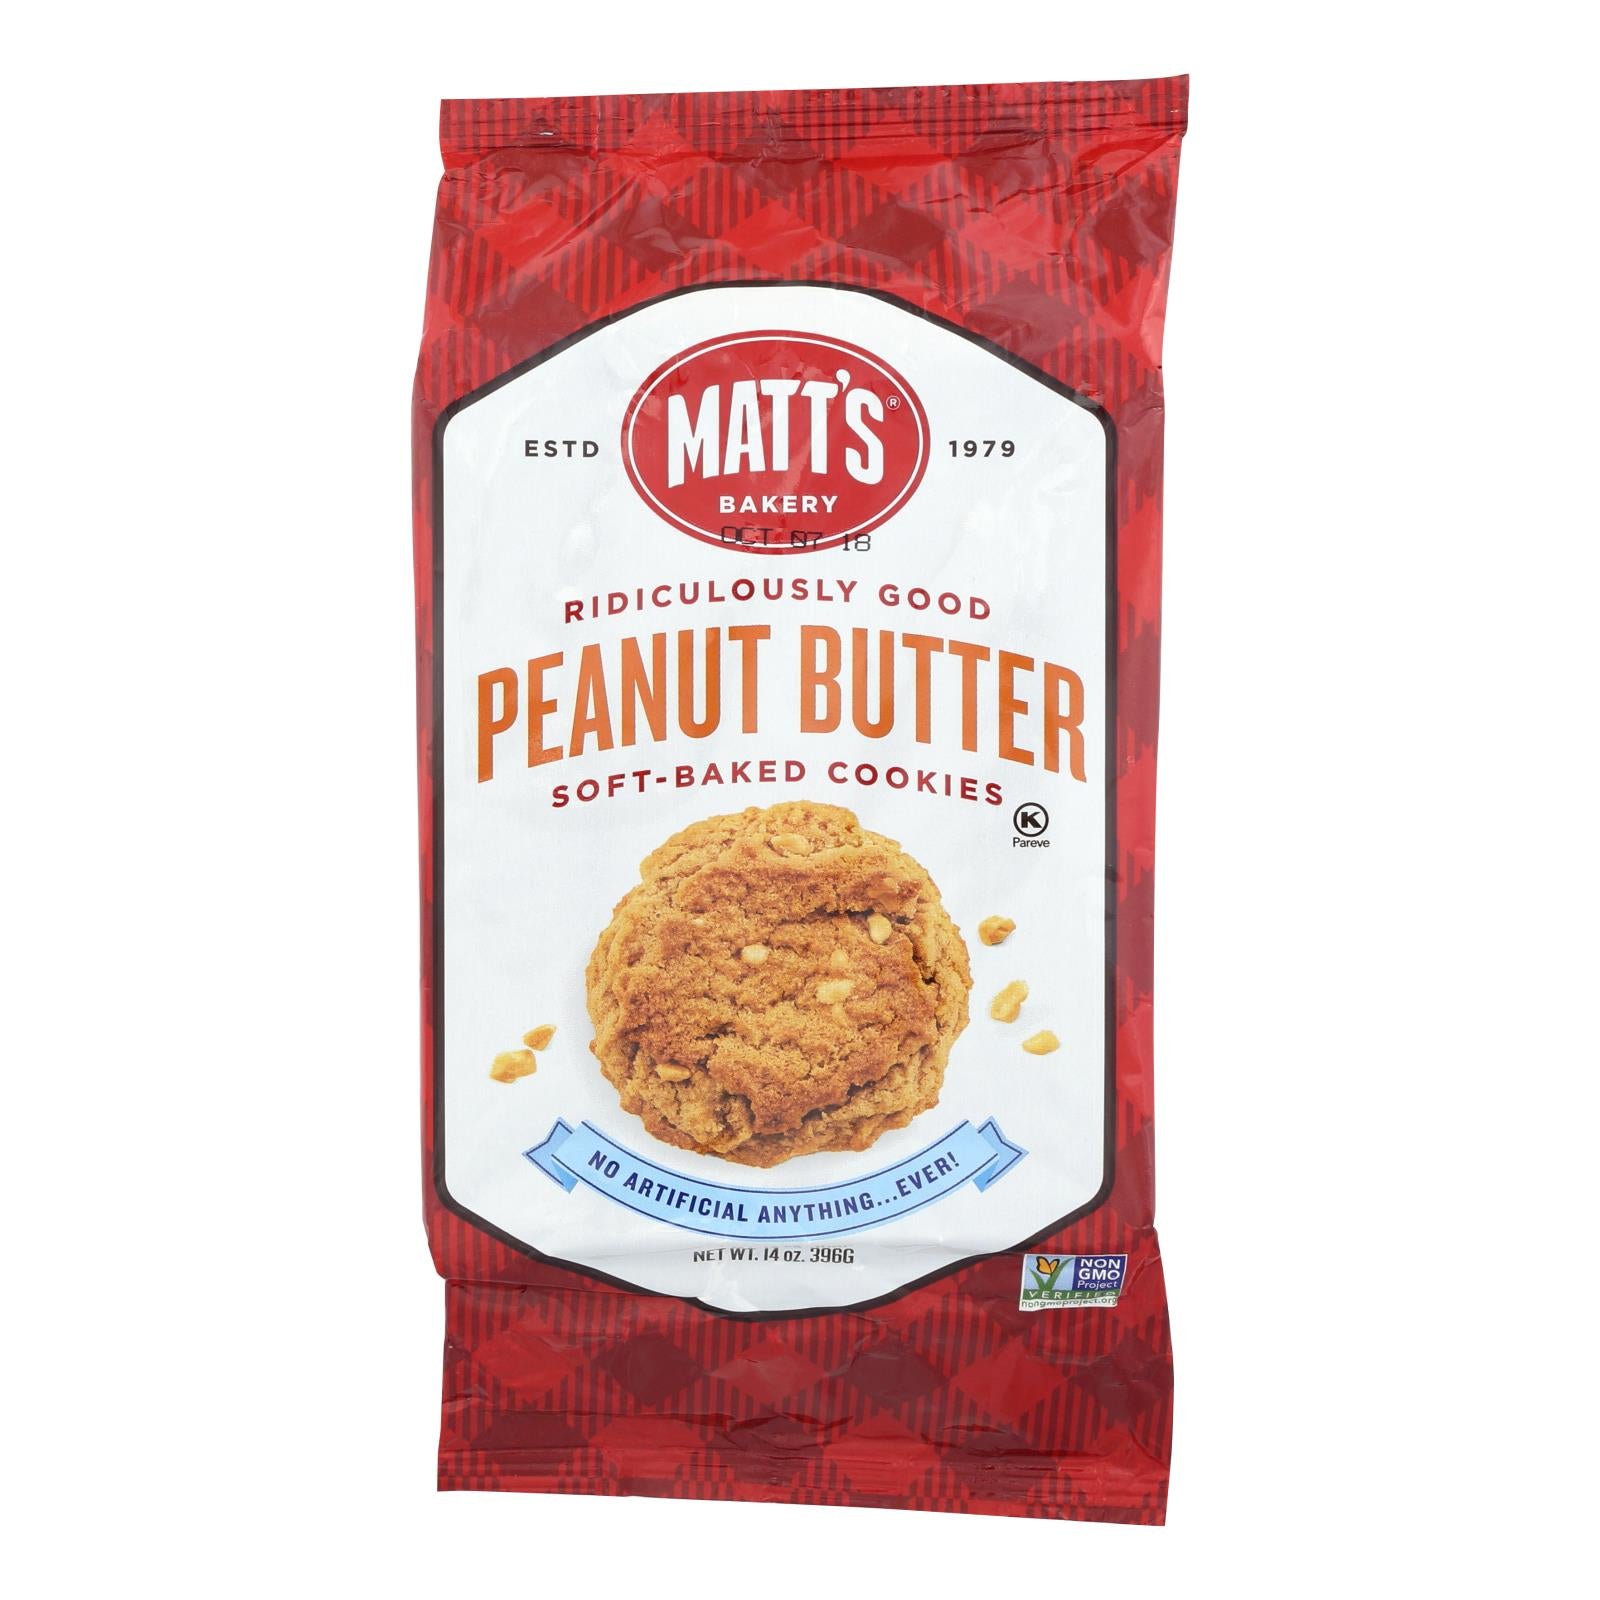 Biscuits de Matt, Biscuits au beurre d'arachide de la boulangerie Matt's - caisse de 6 - 14 OZ (paquet de 6)